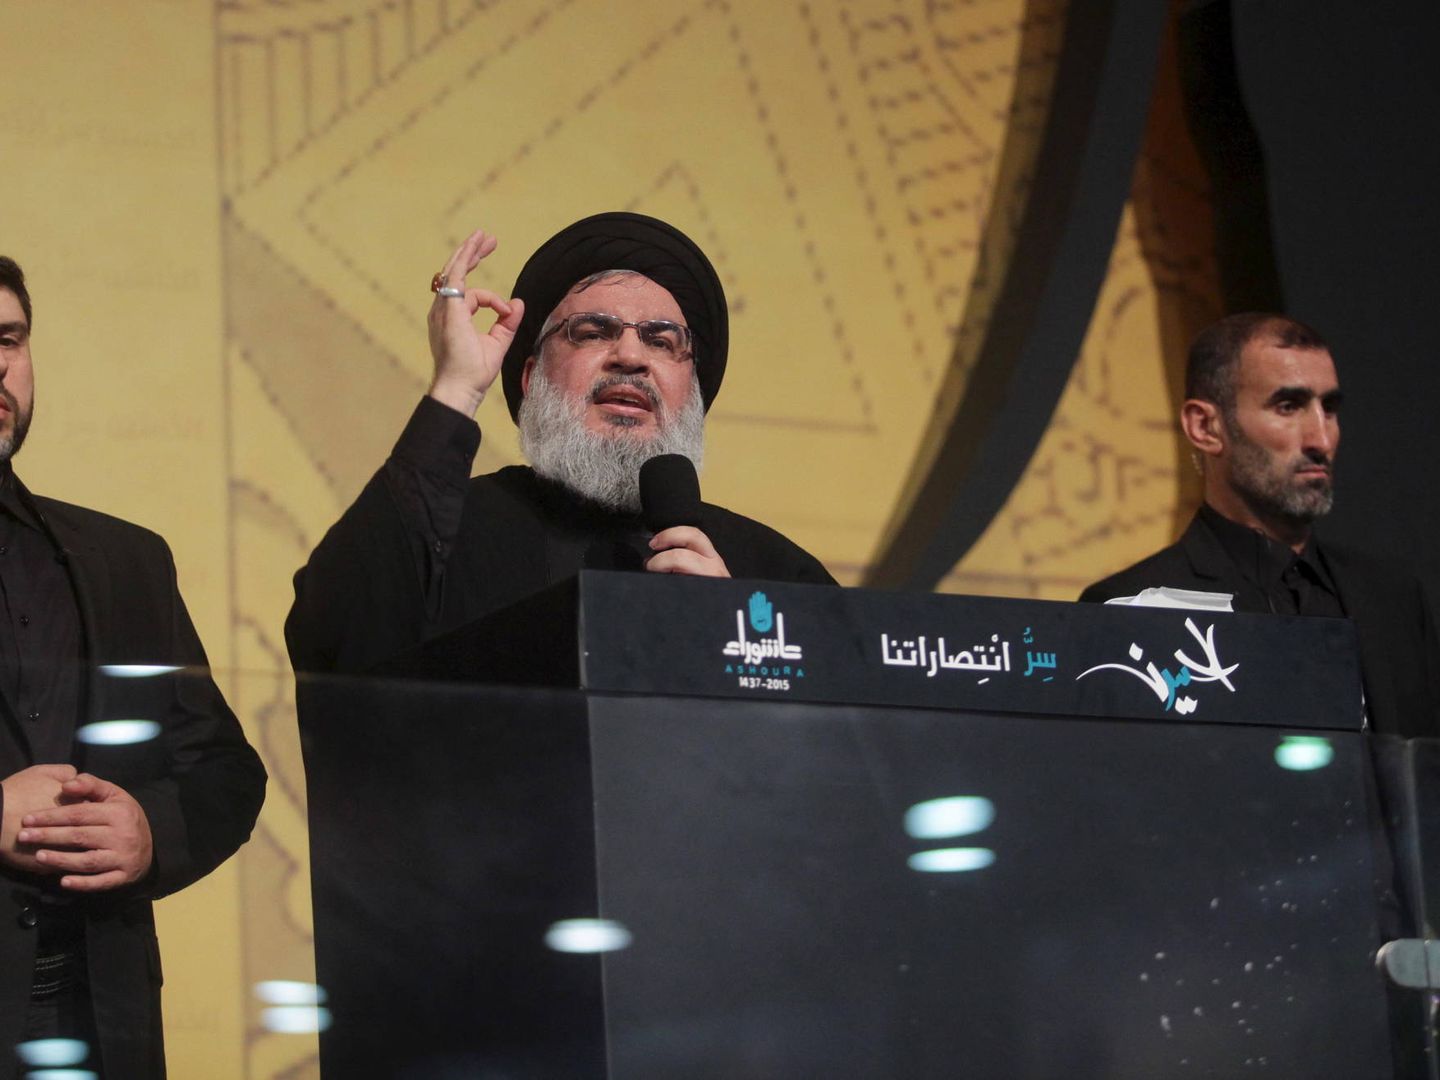 El líder de Hezbolá, Hassan Nasrallah, durante una rara aparición pública durante la celebración chií de la Ashura en Beirut, en octubre de 2015. (Reuters)